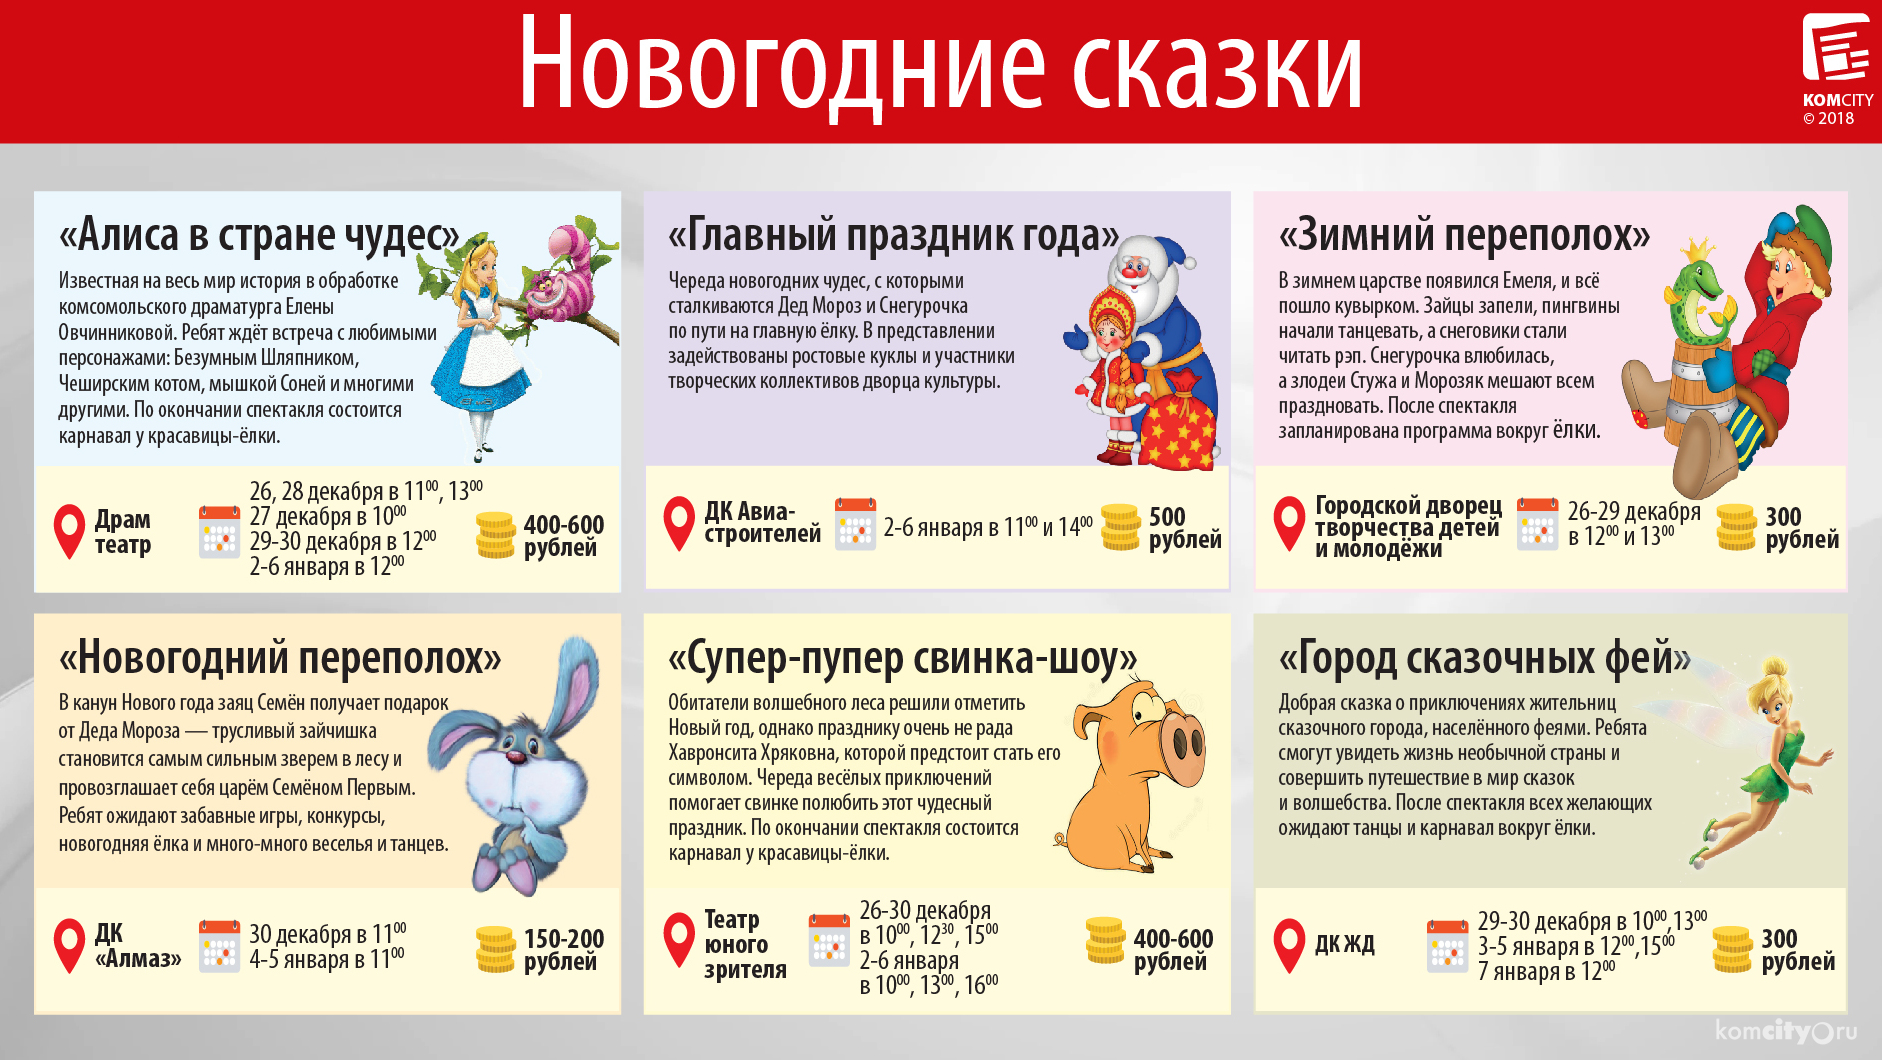 Учреждения культуры Комсомольска-на-Амуре приглашают на Новогодние сказки 